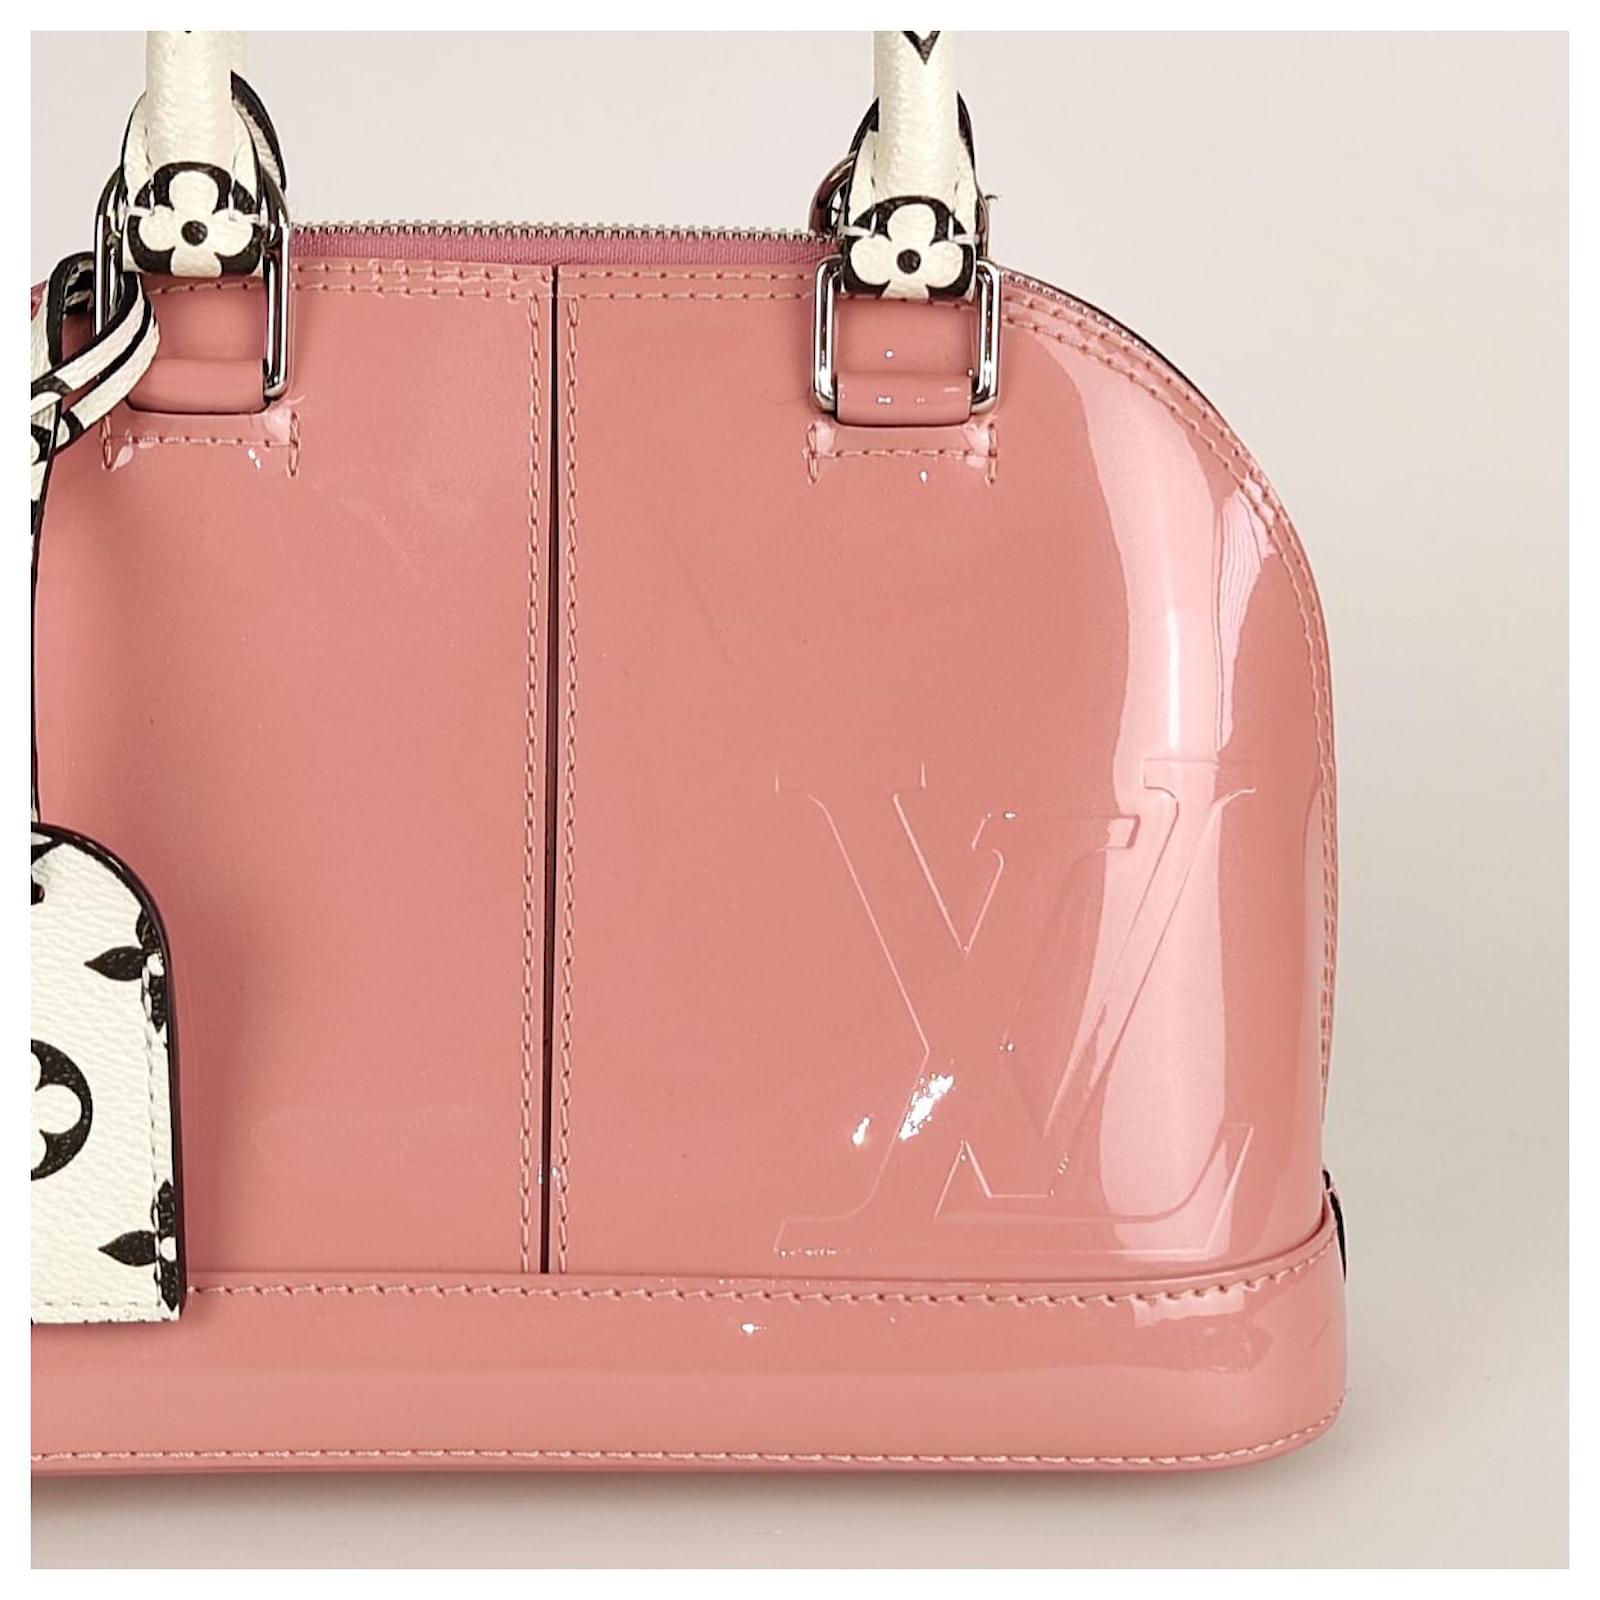 Authentic LOUIS VUITTON Alma Mini Shoulder Bag Pink Leather